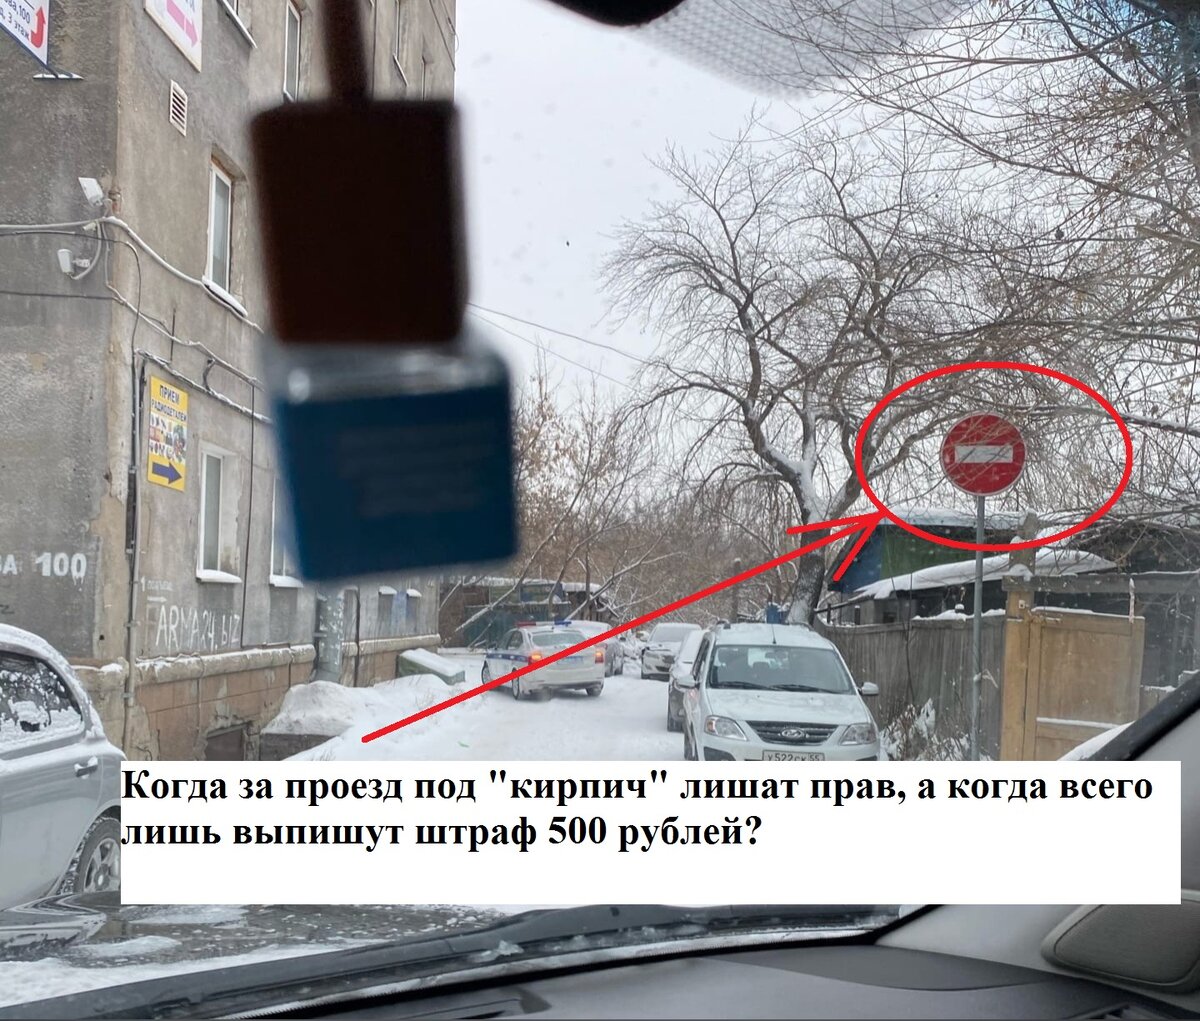 В данном случае "кирпич" установлен, для организации въезда и выезда и проехав в его зону водителю грозит штраф 500 рублей.